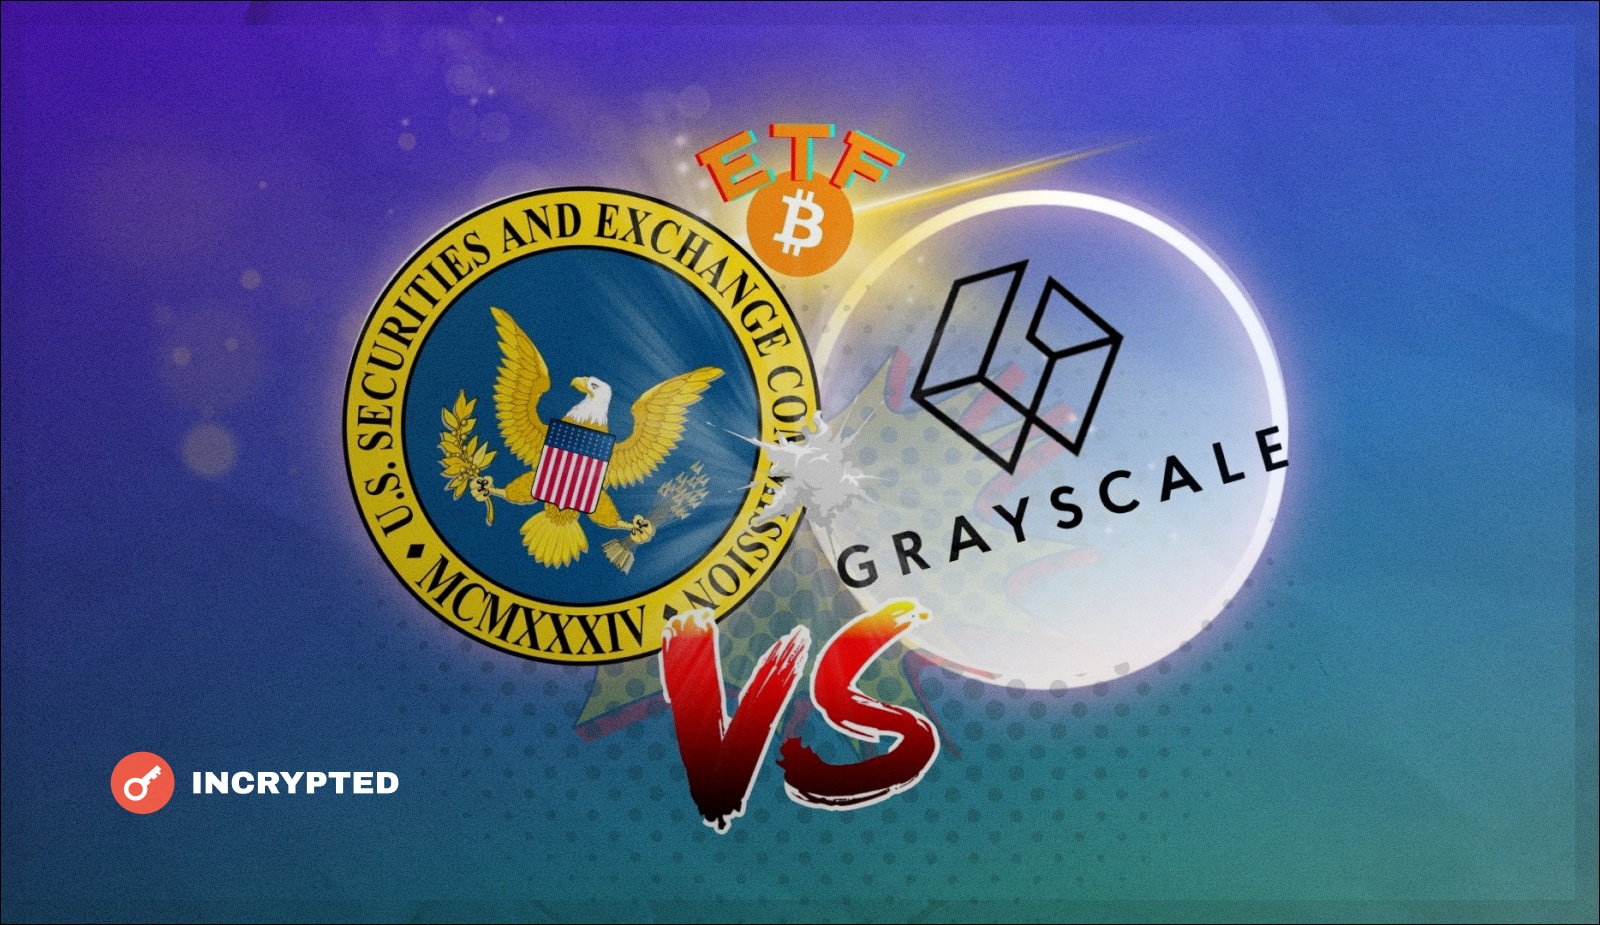 Grayscale оспаривает отказ SEC по спотовому биткоин-ETF. Заглавный коллаж новости.